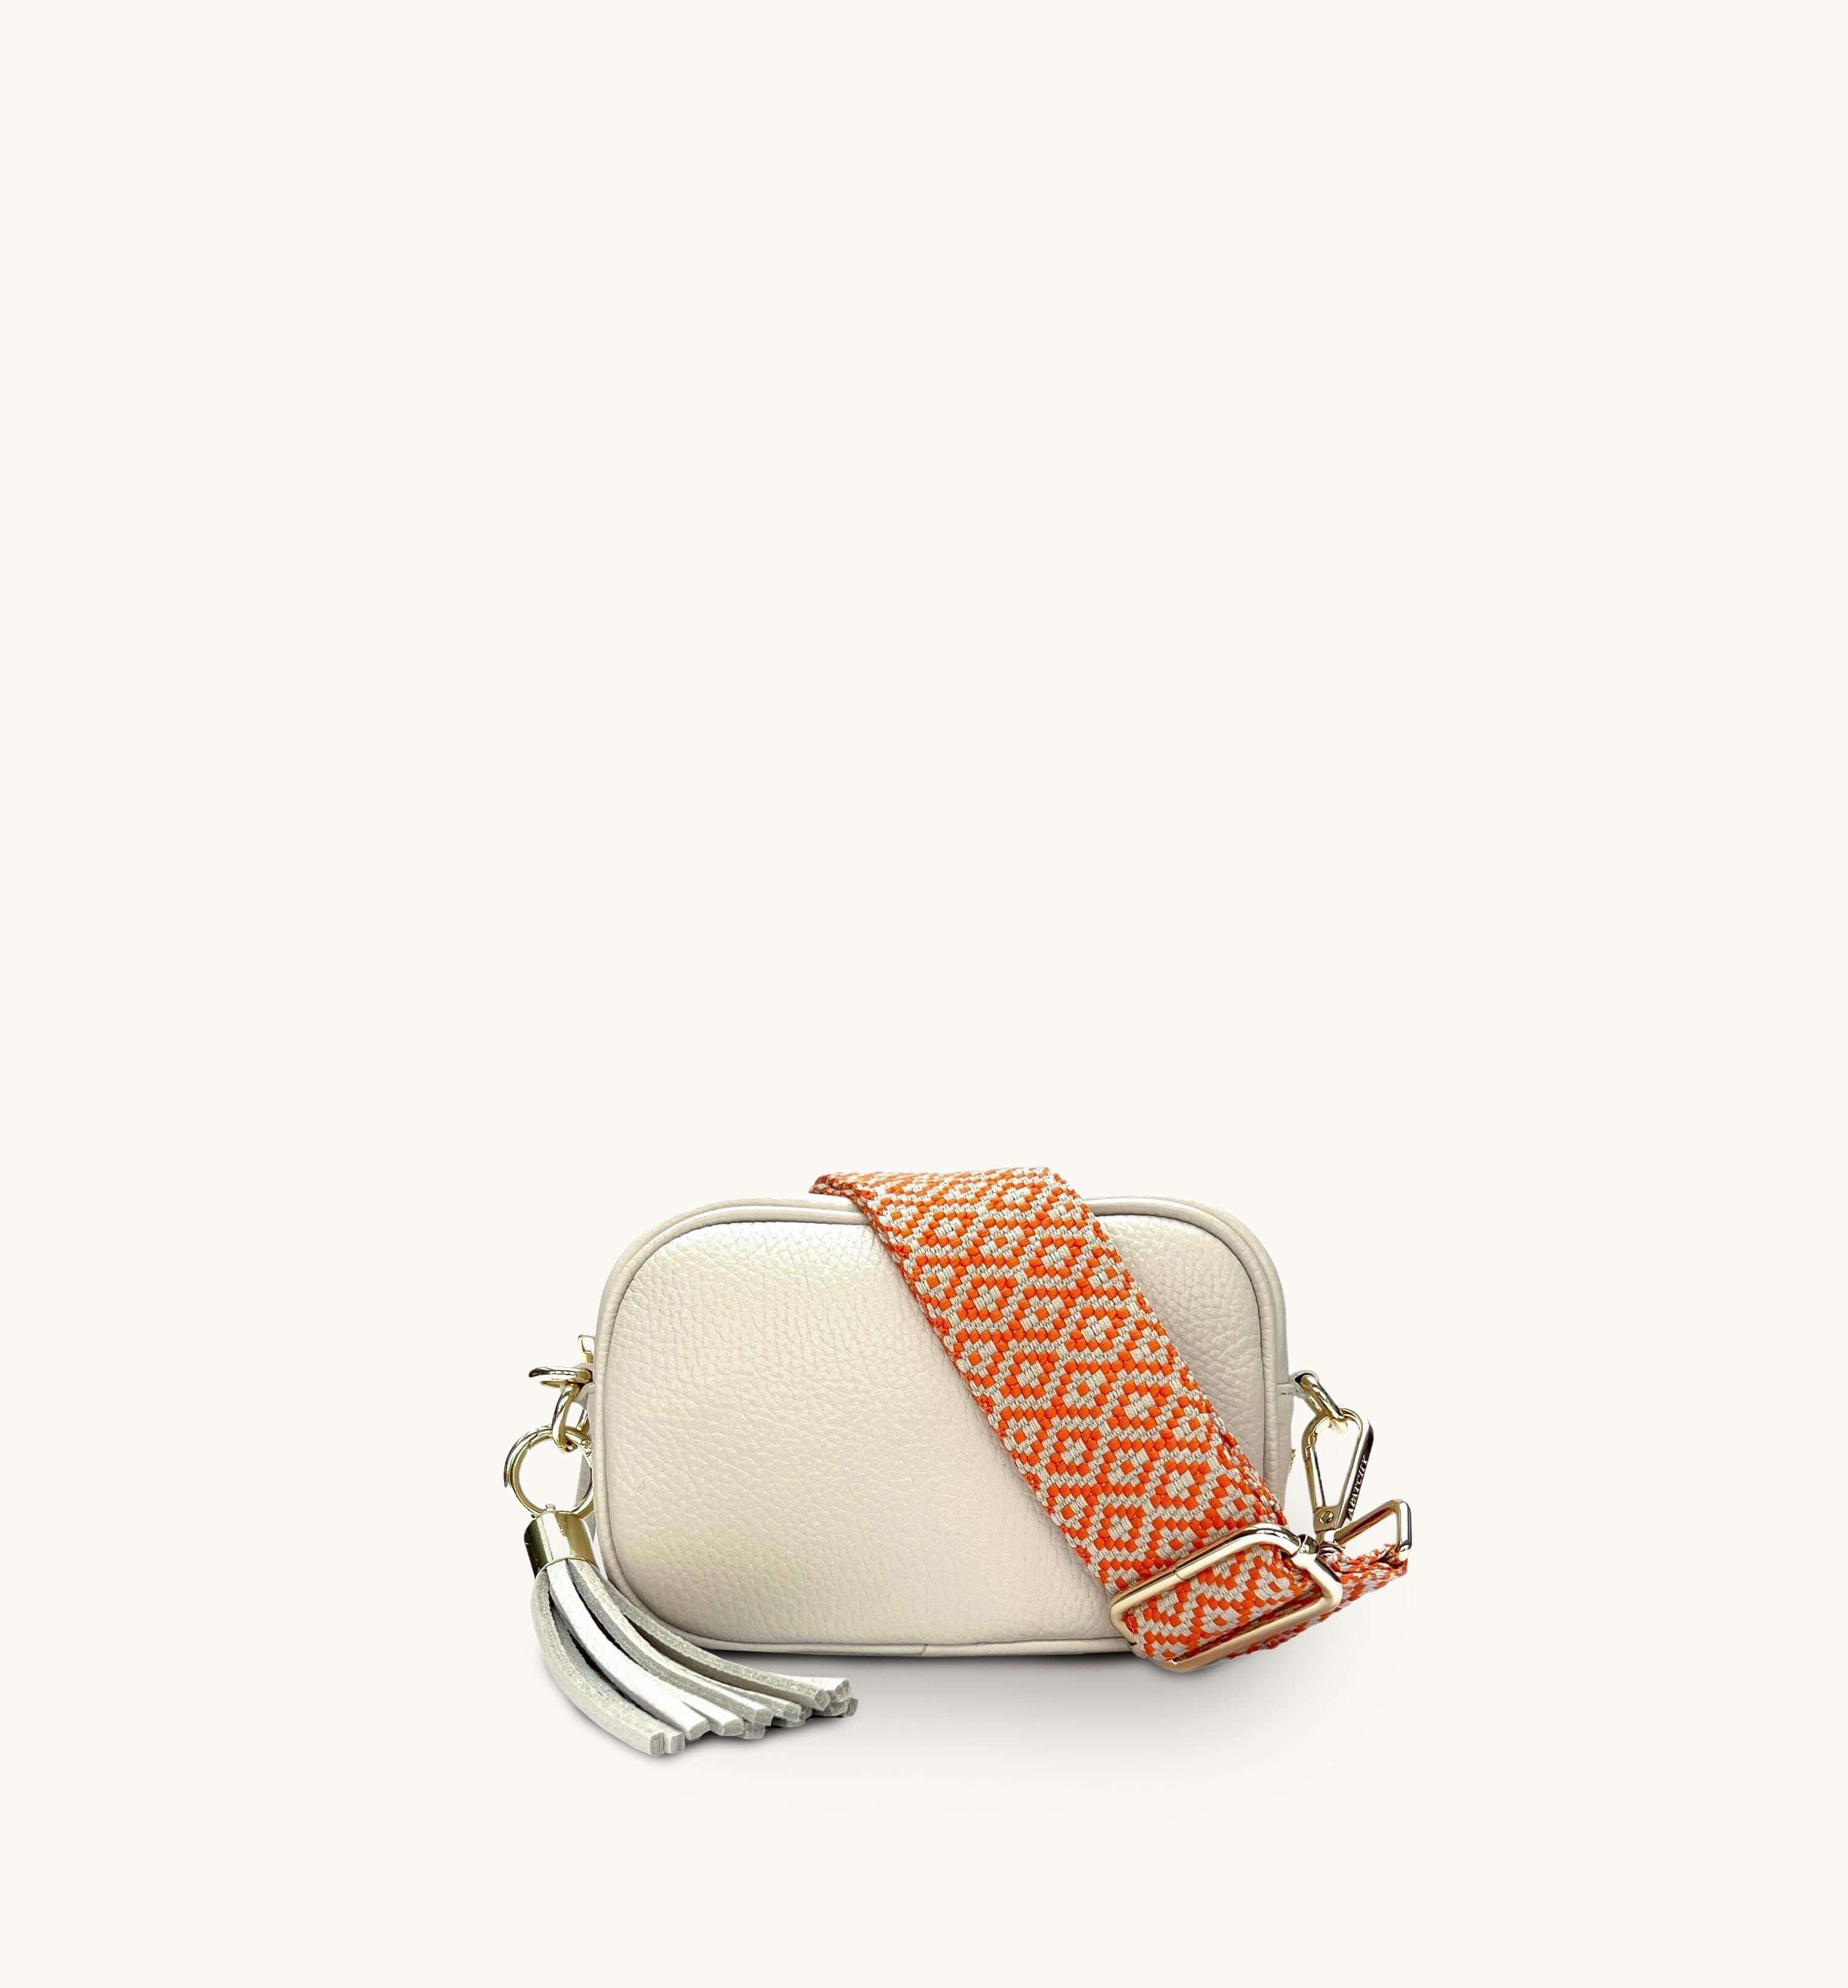 Кожаная сумка для телефона Mini с кисточками и оранжевым ремешком с вышивкой крестиком Apatchy London, бежевый цена и фото